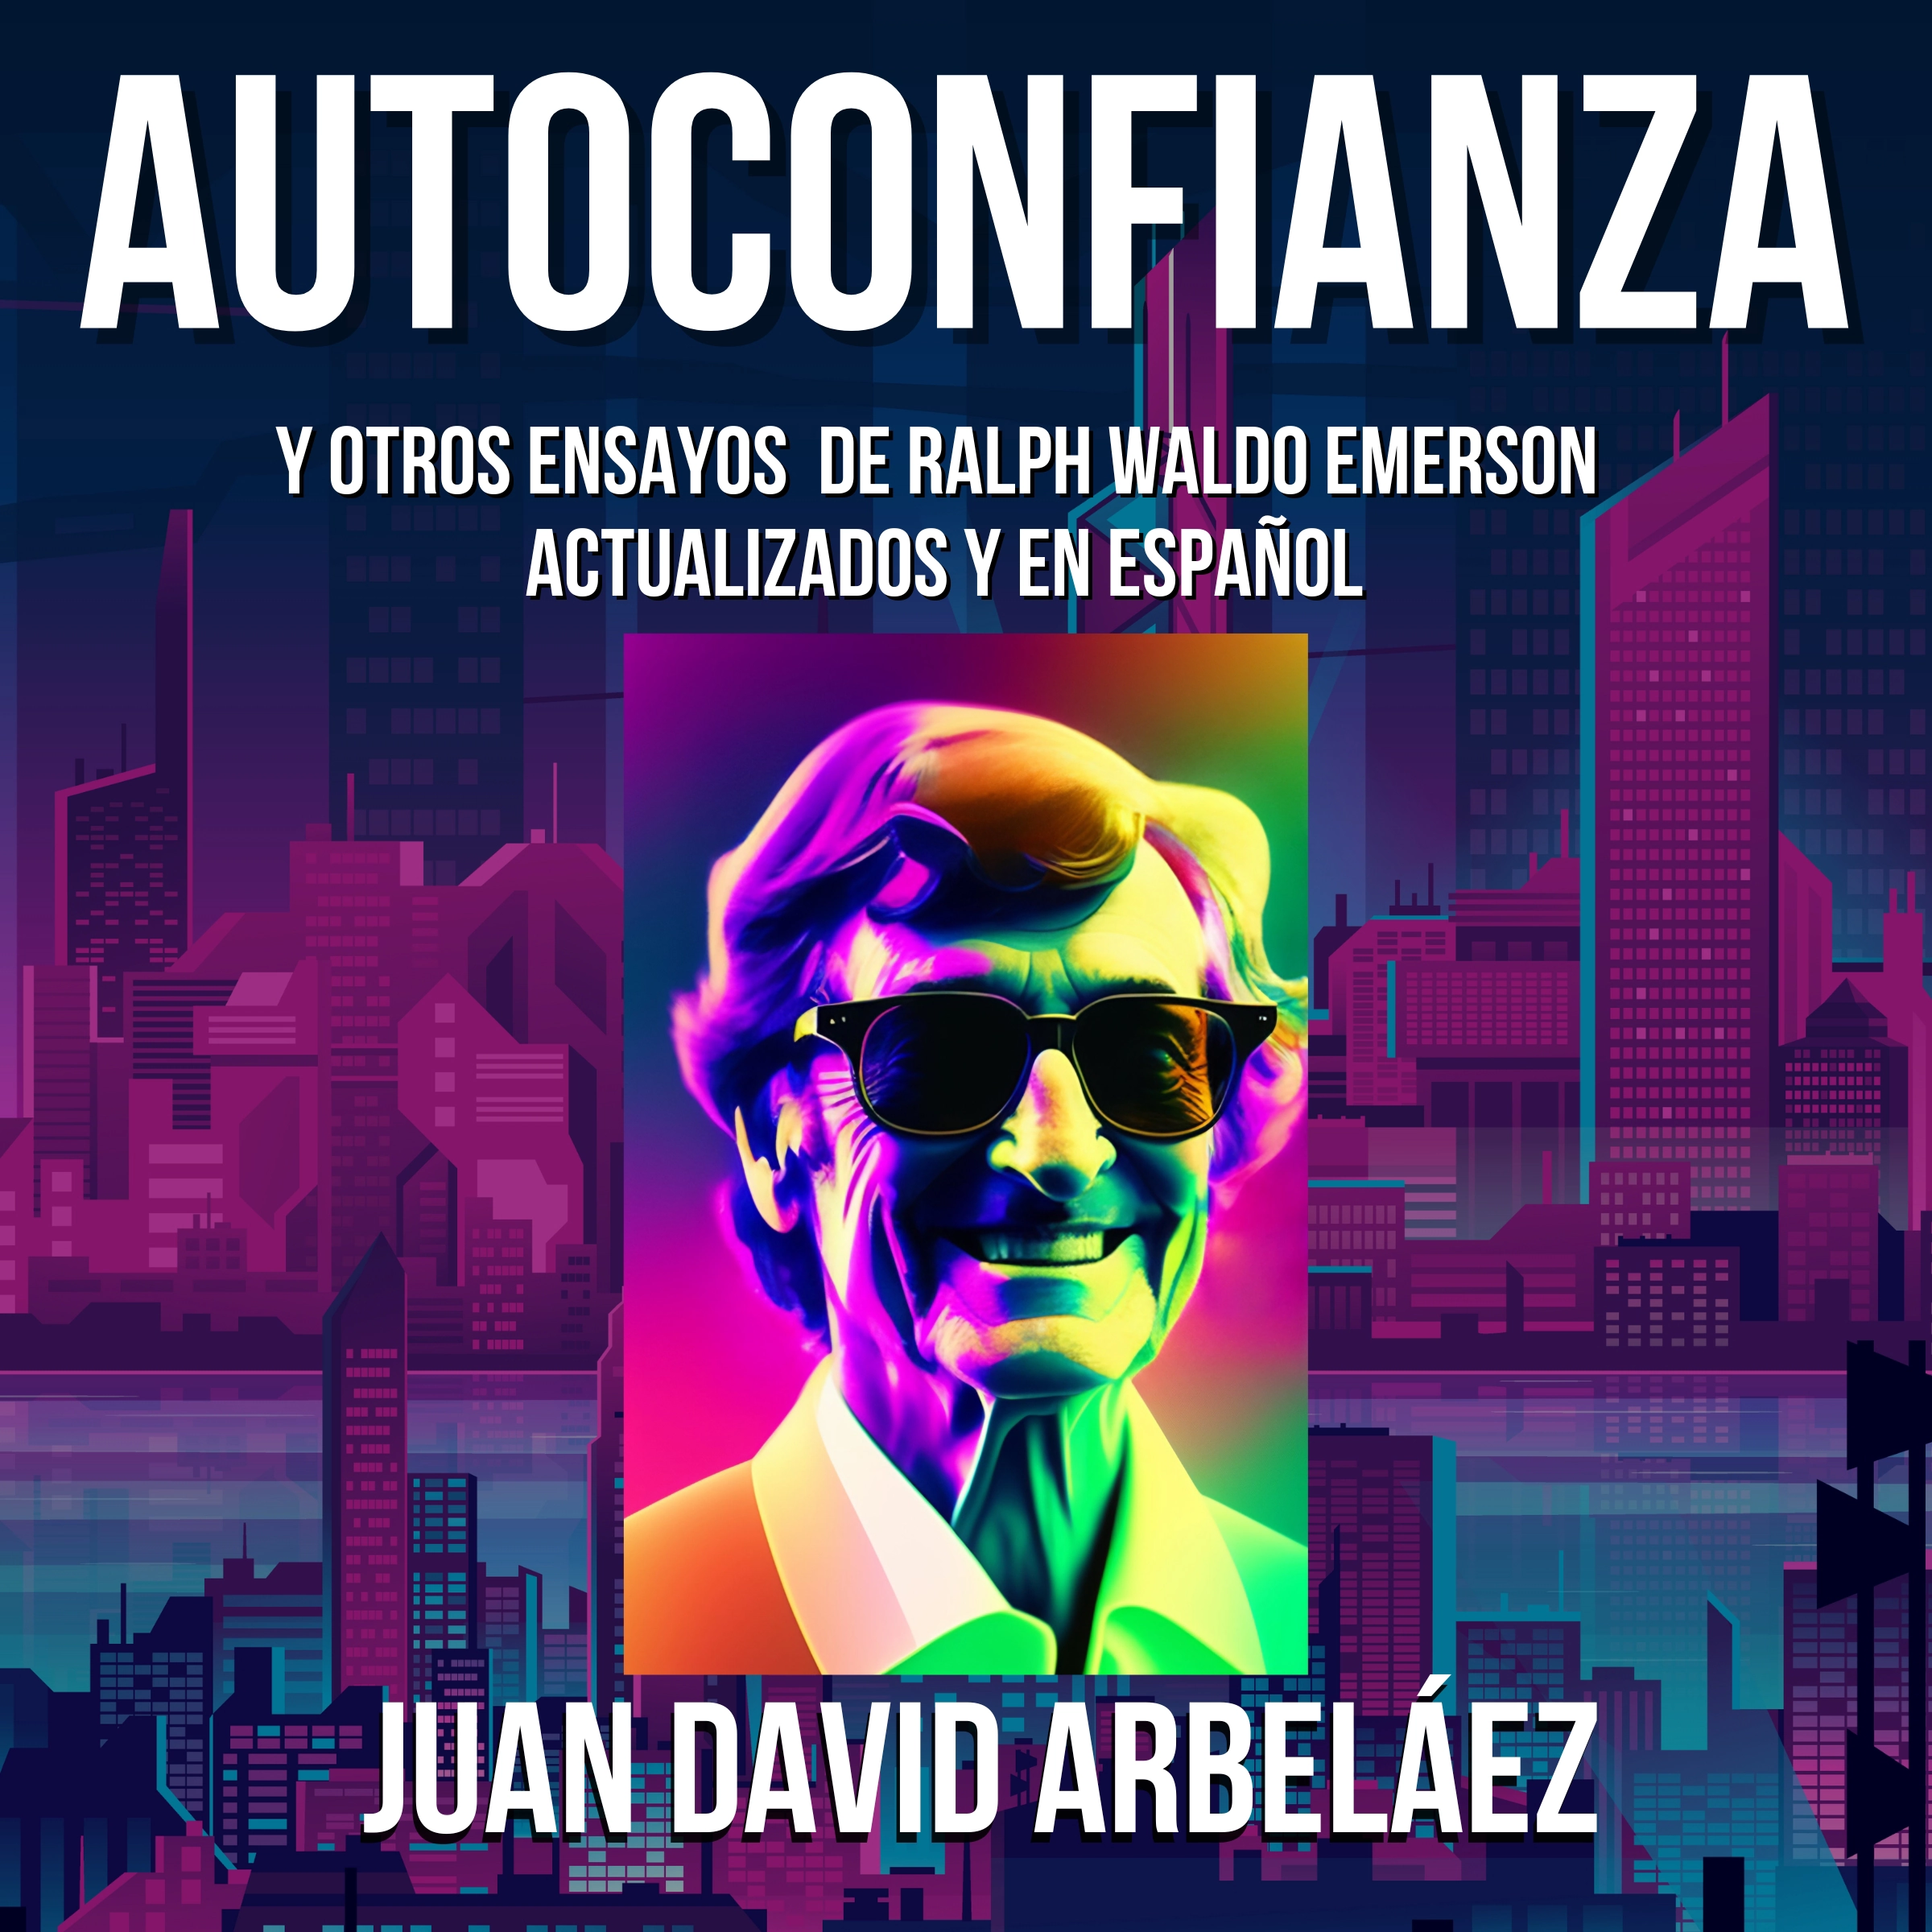 Autoconfianza y Otros Ensayos De Ralph Waldo Emerson - Actualizados y En Español Audiobook by Juan David Arbelaez